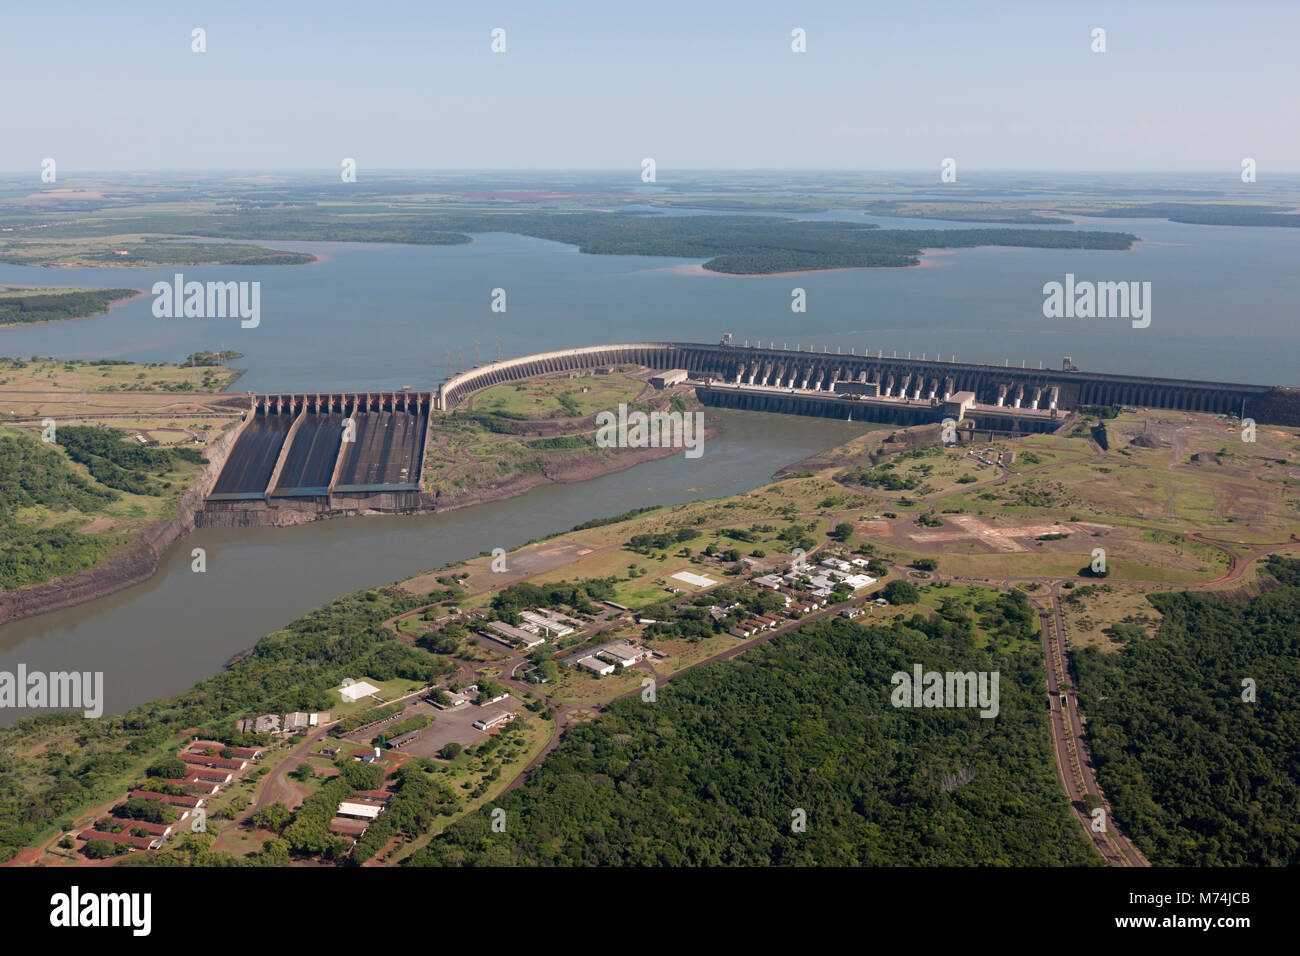 Centrale hydroélectrique d'Itaipu, construit par le Paraguay et le Brésil le 2ème plus grand fleuve du Prana dans monde, partenaire de l'ONU sur le changement climatique, 1 des sept merveilles modernes Banque D'Images